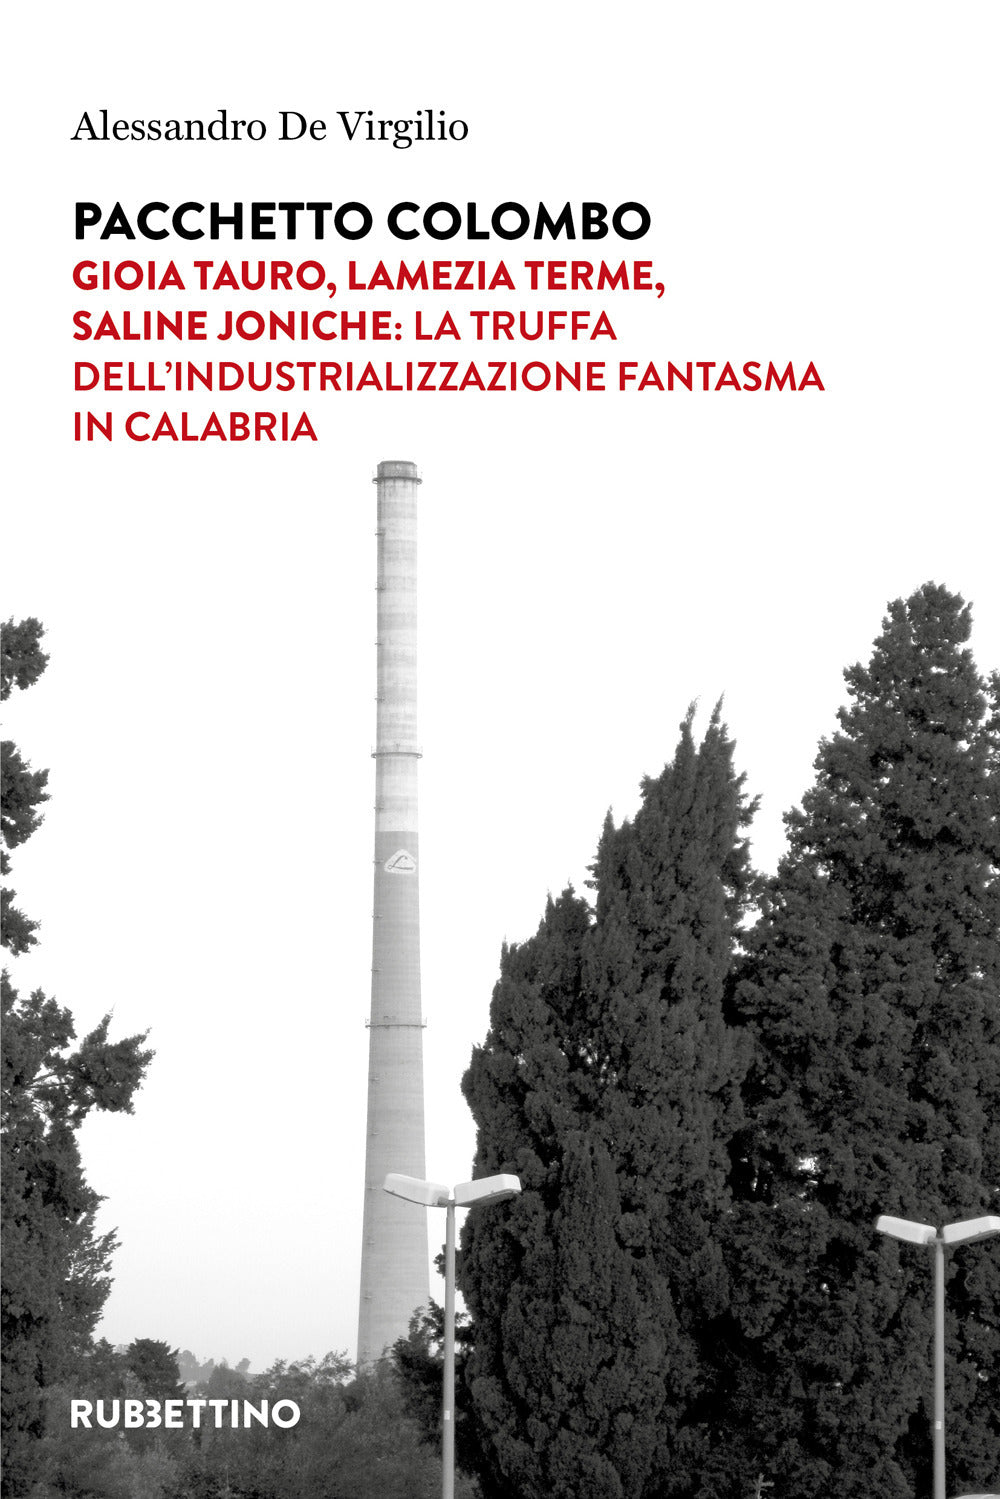 Pacchetto Colombo. Gioia Tauro, Lamezia Terme, Saline Joniche: la truffa dell'industrializzazione fantasma in Calabria.